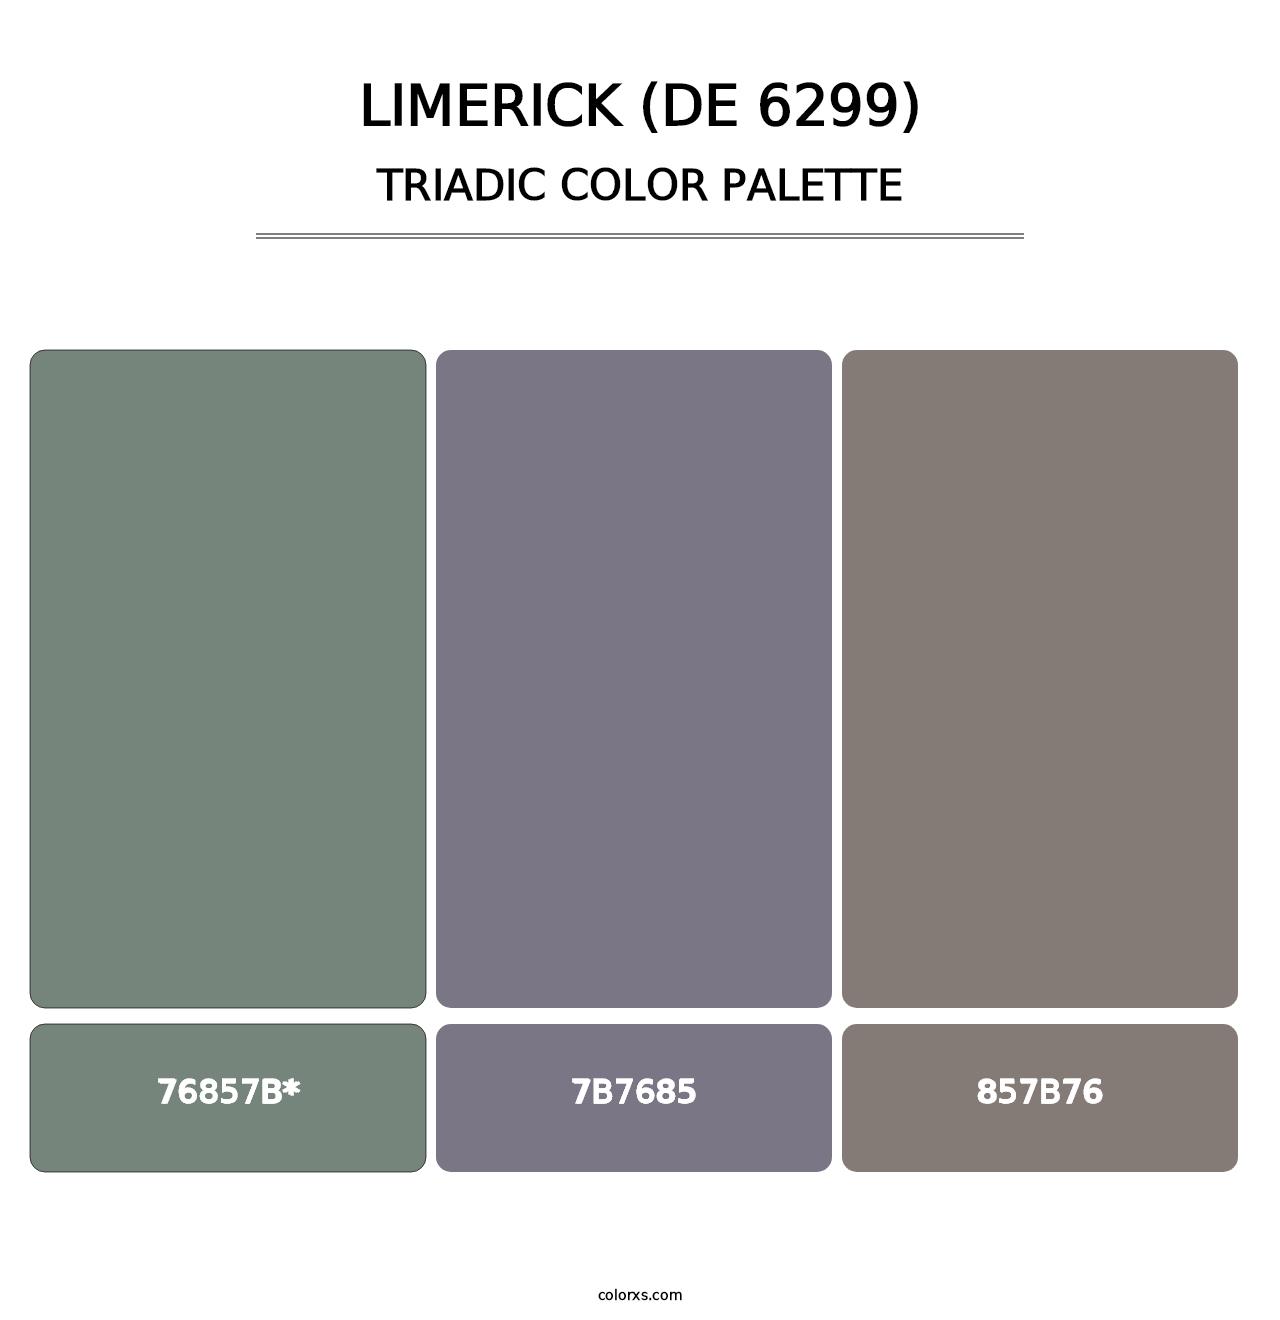 Limerick (DE 6299) - Triadic Color Palette